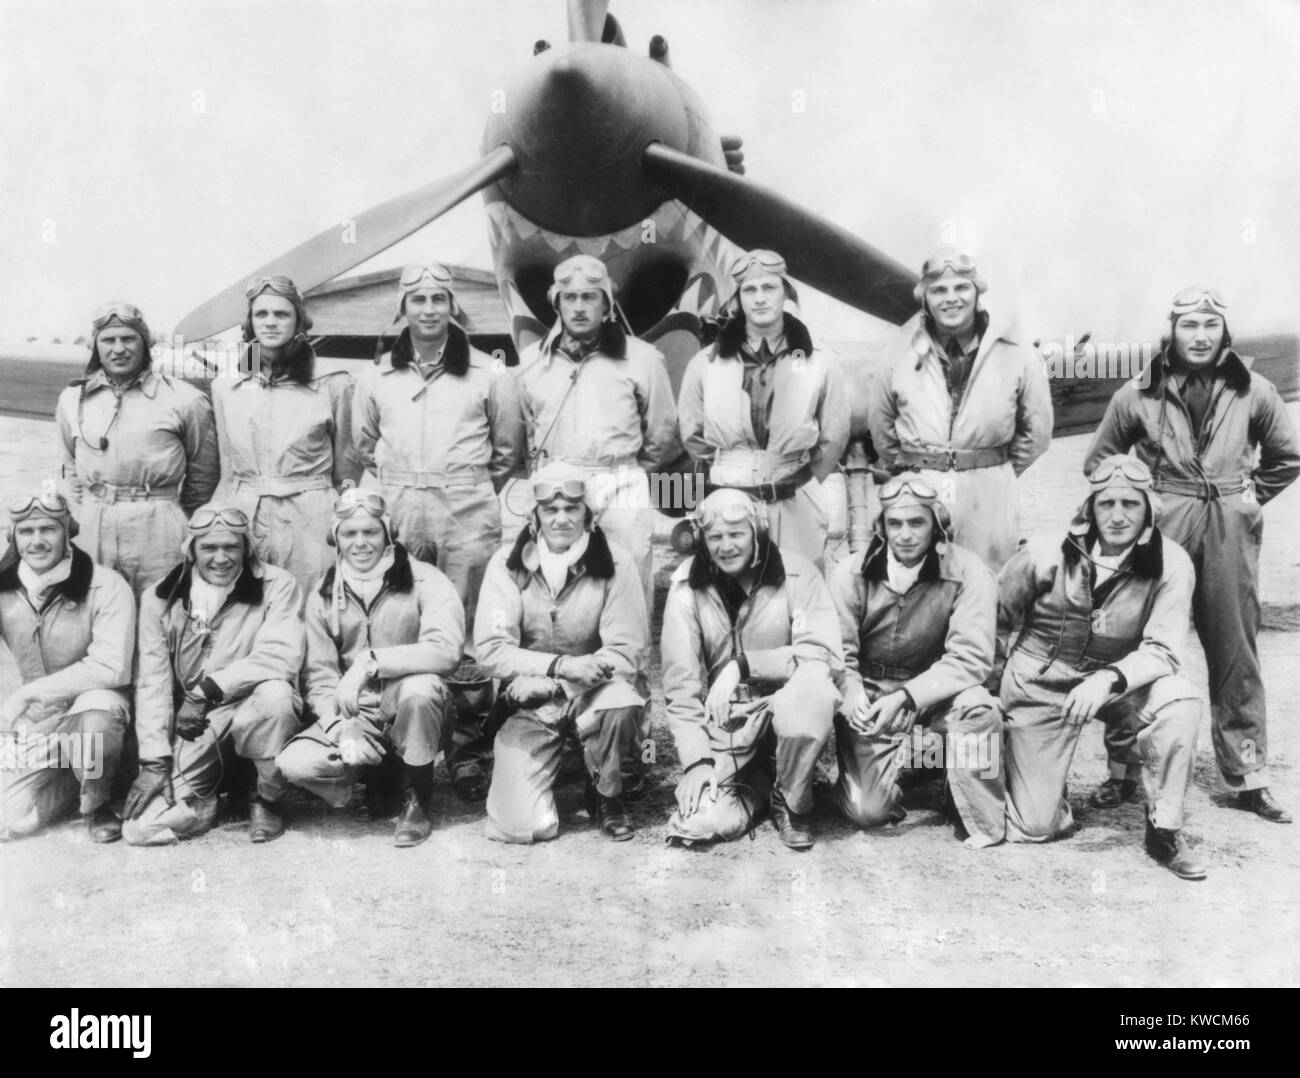 Die Piloten der Flying Tigers, American freiwillige fliegen und kämpfen in China im März 1942. L-R Vordere Reihe: C.R. Bond; G.L. Paxton; s. Wright; J.V. Newkirk; D.L. Hügel; J. G. hell; und E.S. Conant. Hintere Reihe: R.B. Keeton; F. Lawlor; Z.B. Ricketts; R.F. Layher; 1234567; Geselbracht T.A. Jones; F. Schiel. - (BSLOC 2014 14 14) Stockfoto